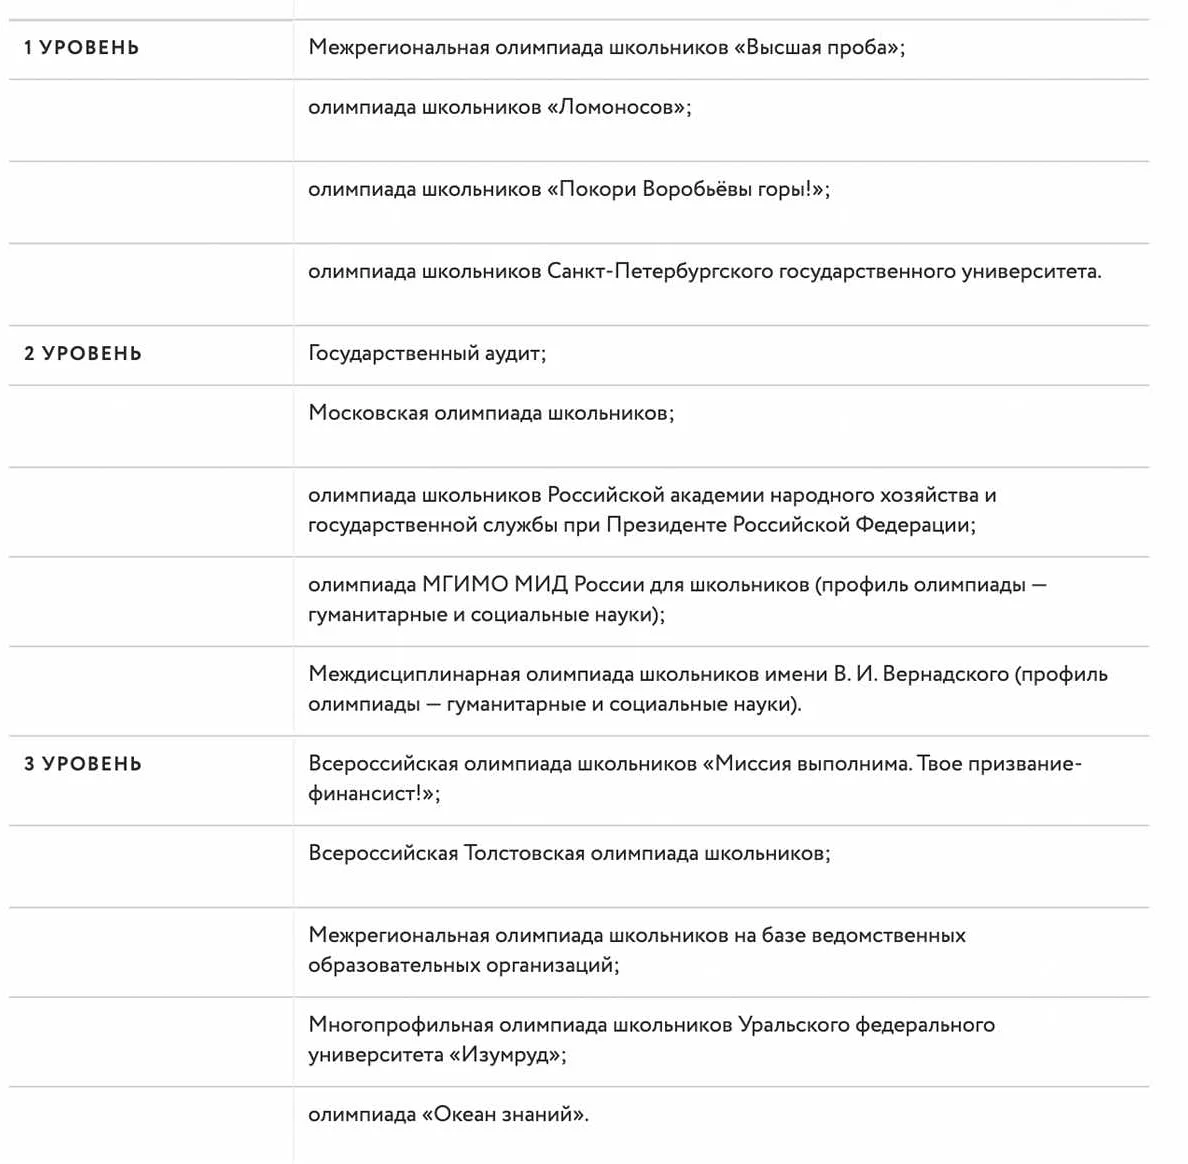 Методы обучения русскому языку и их эффективность